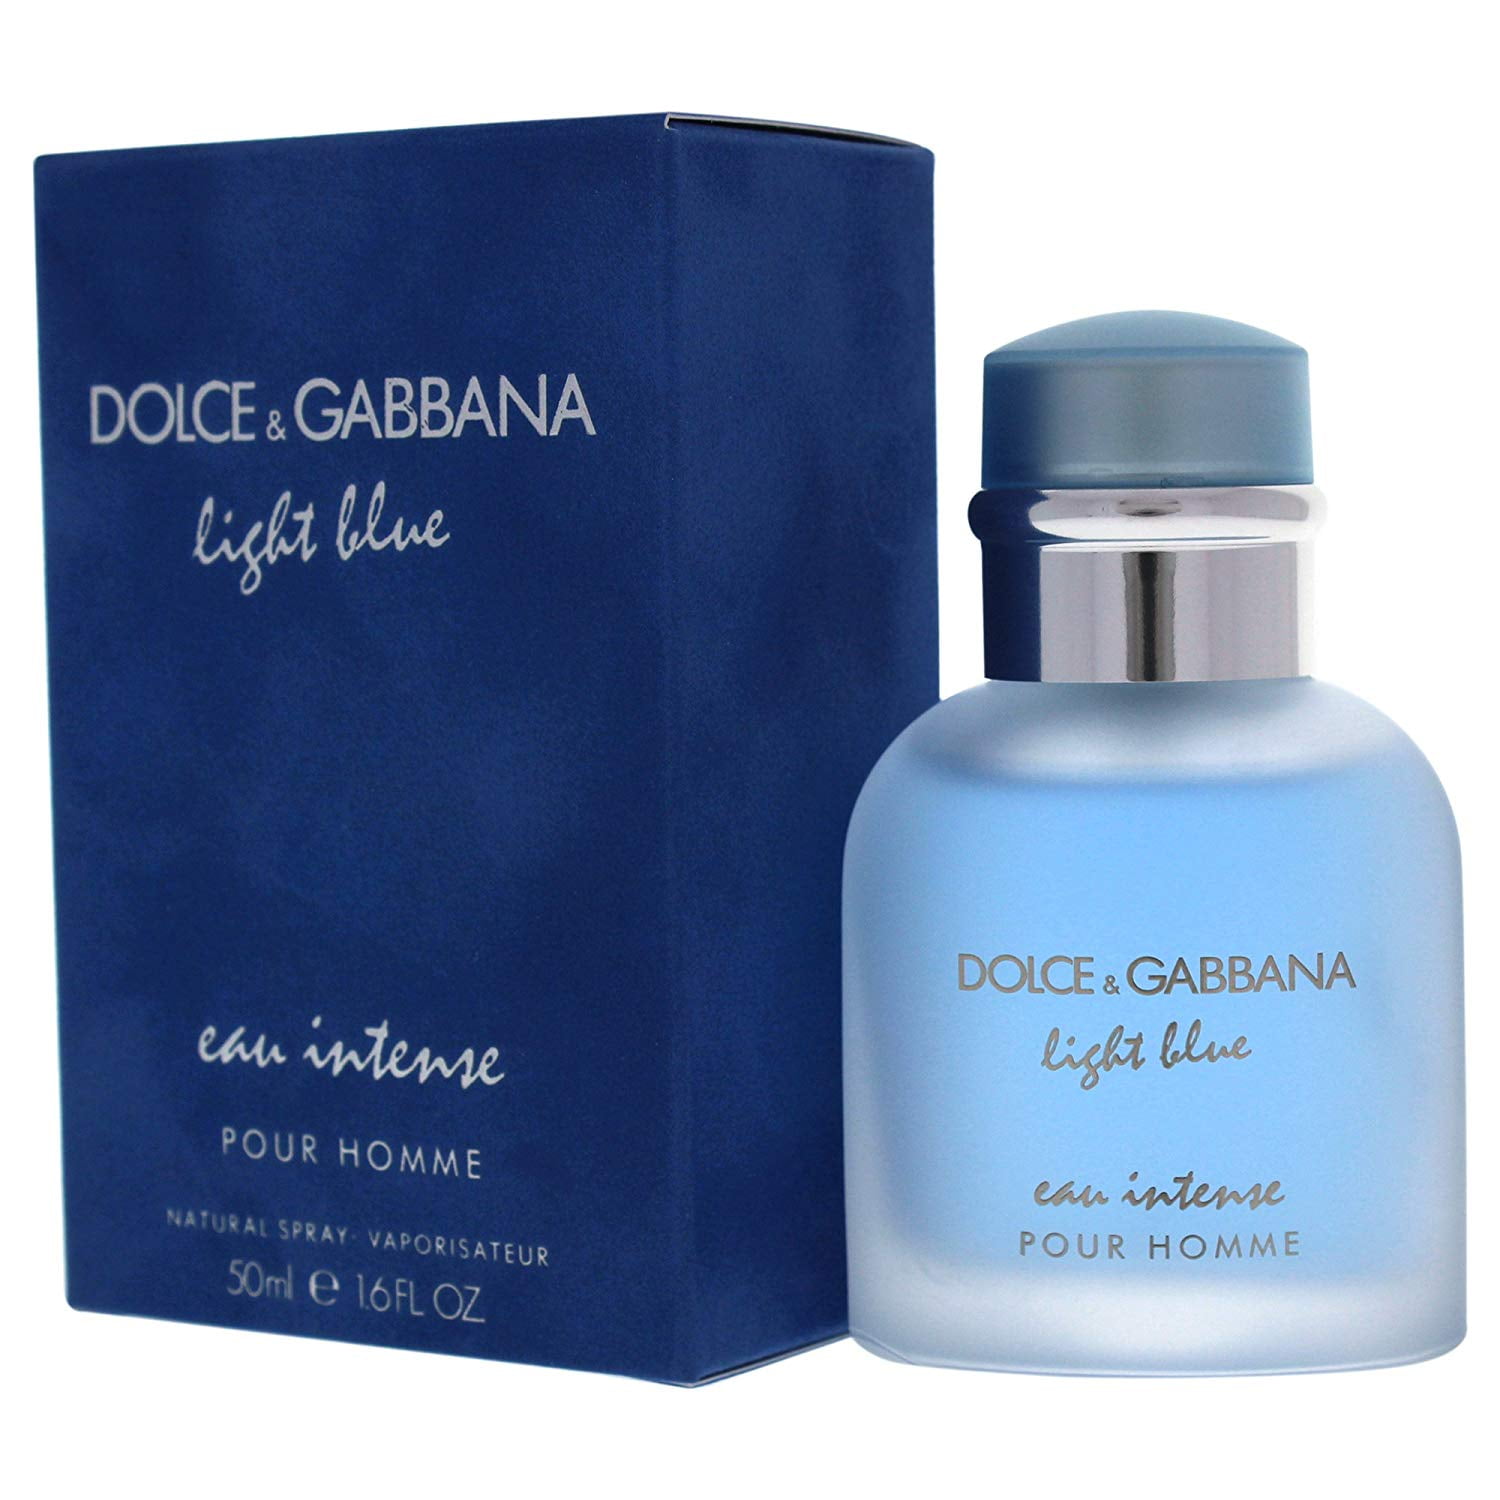 dolce gabbana light blue intense review